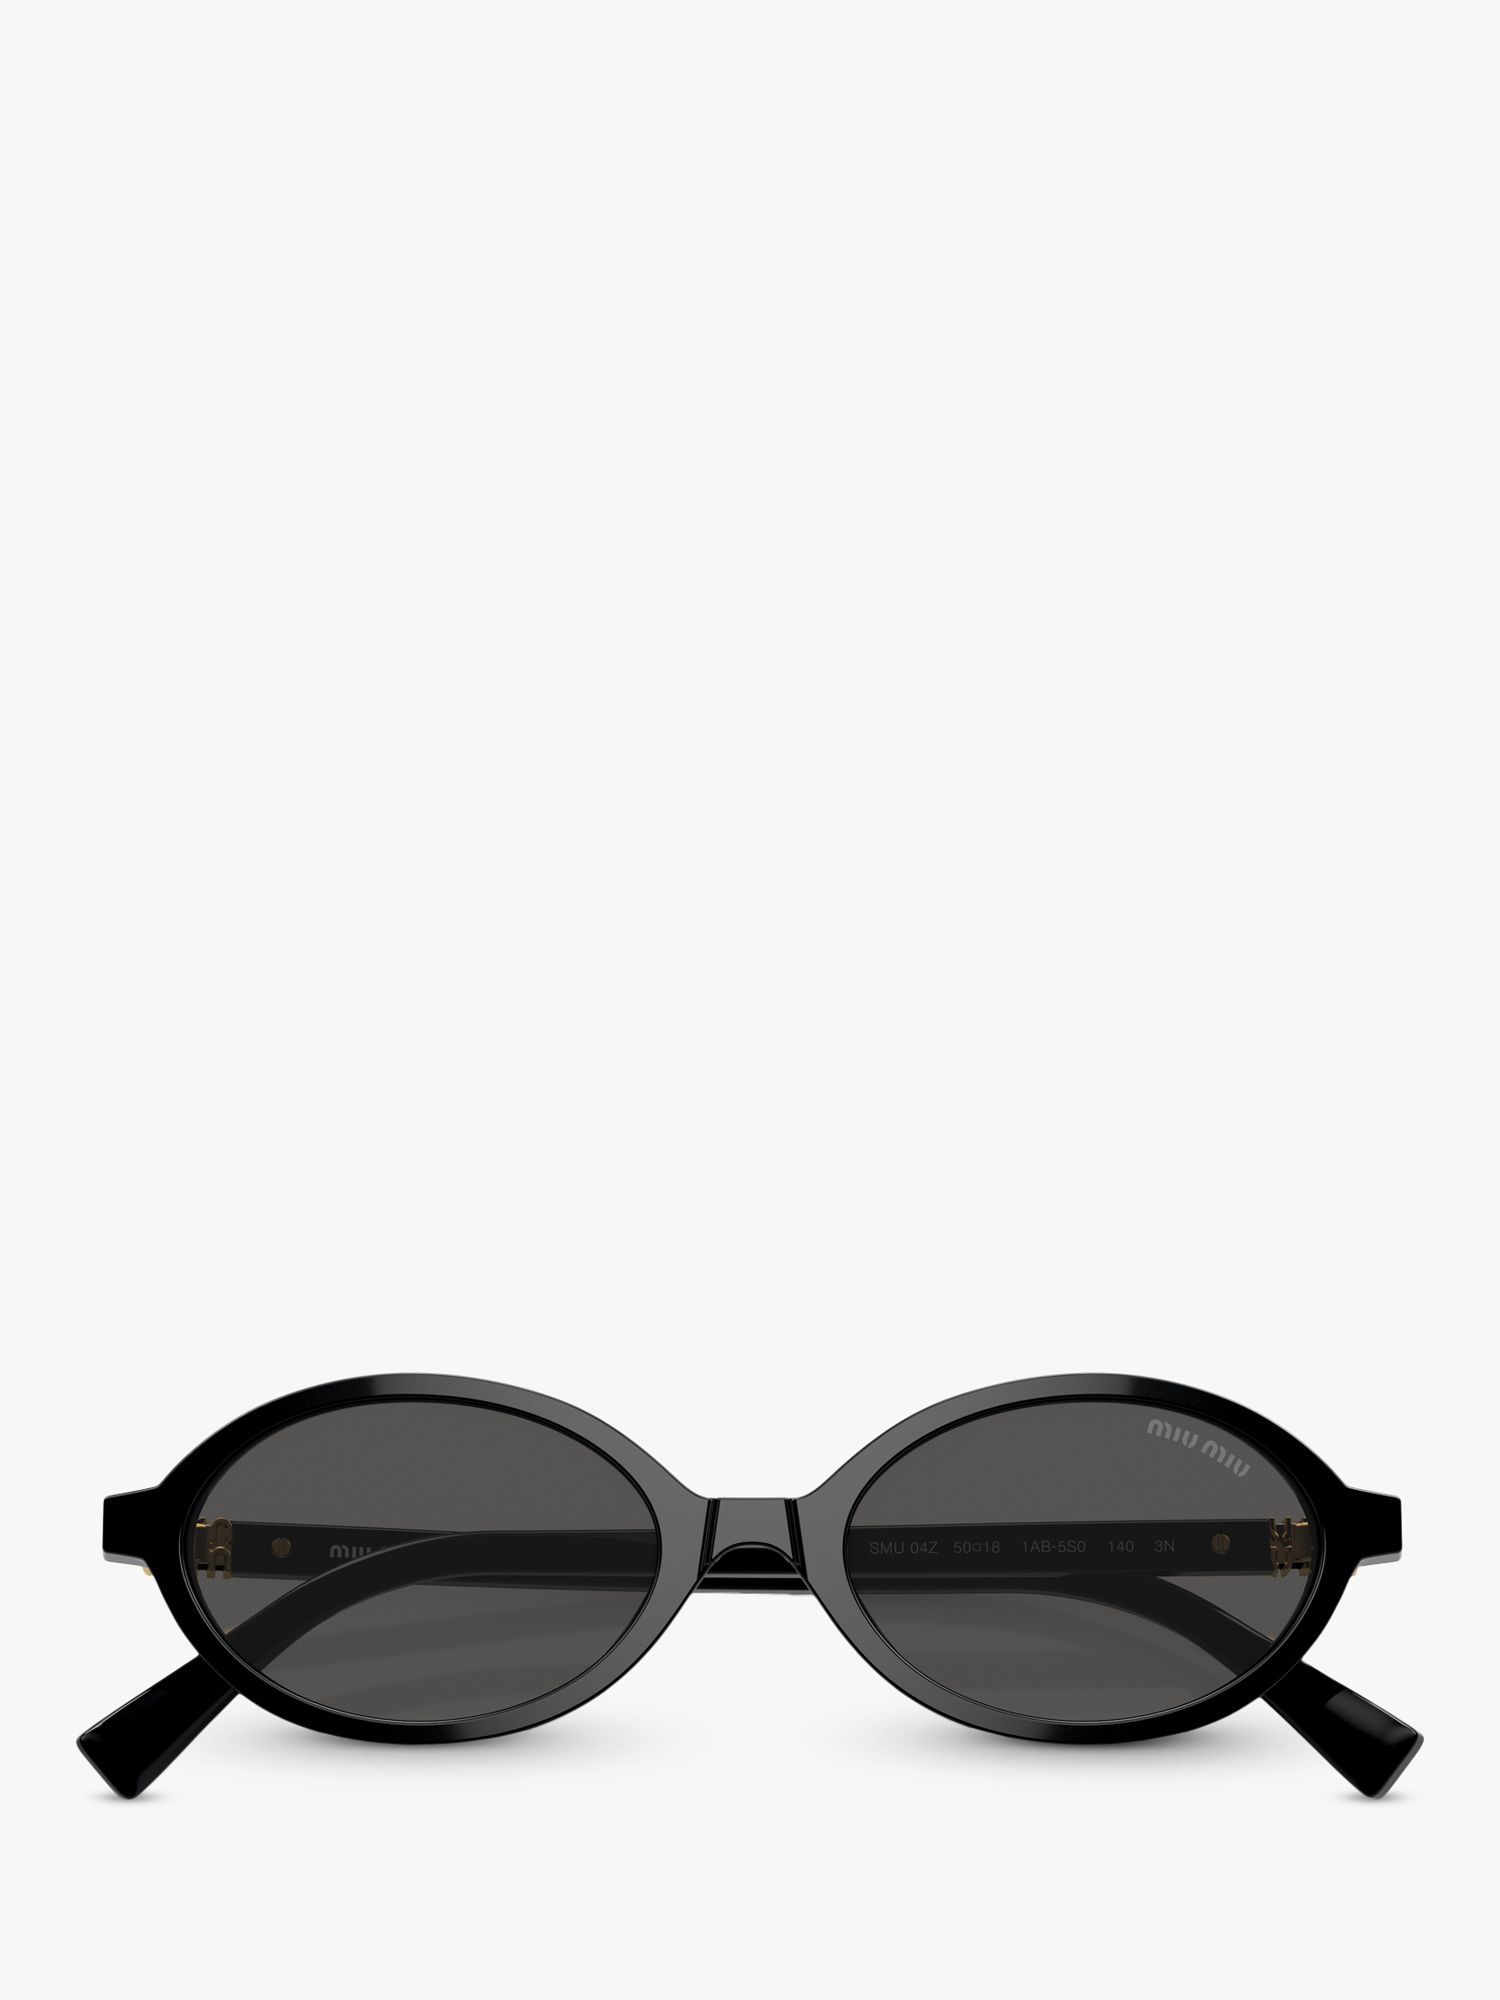 Miu Miu MU 04ZS Women's Oval Sunglasses, Black